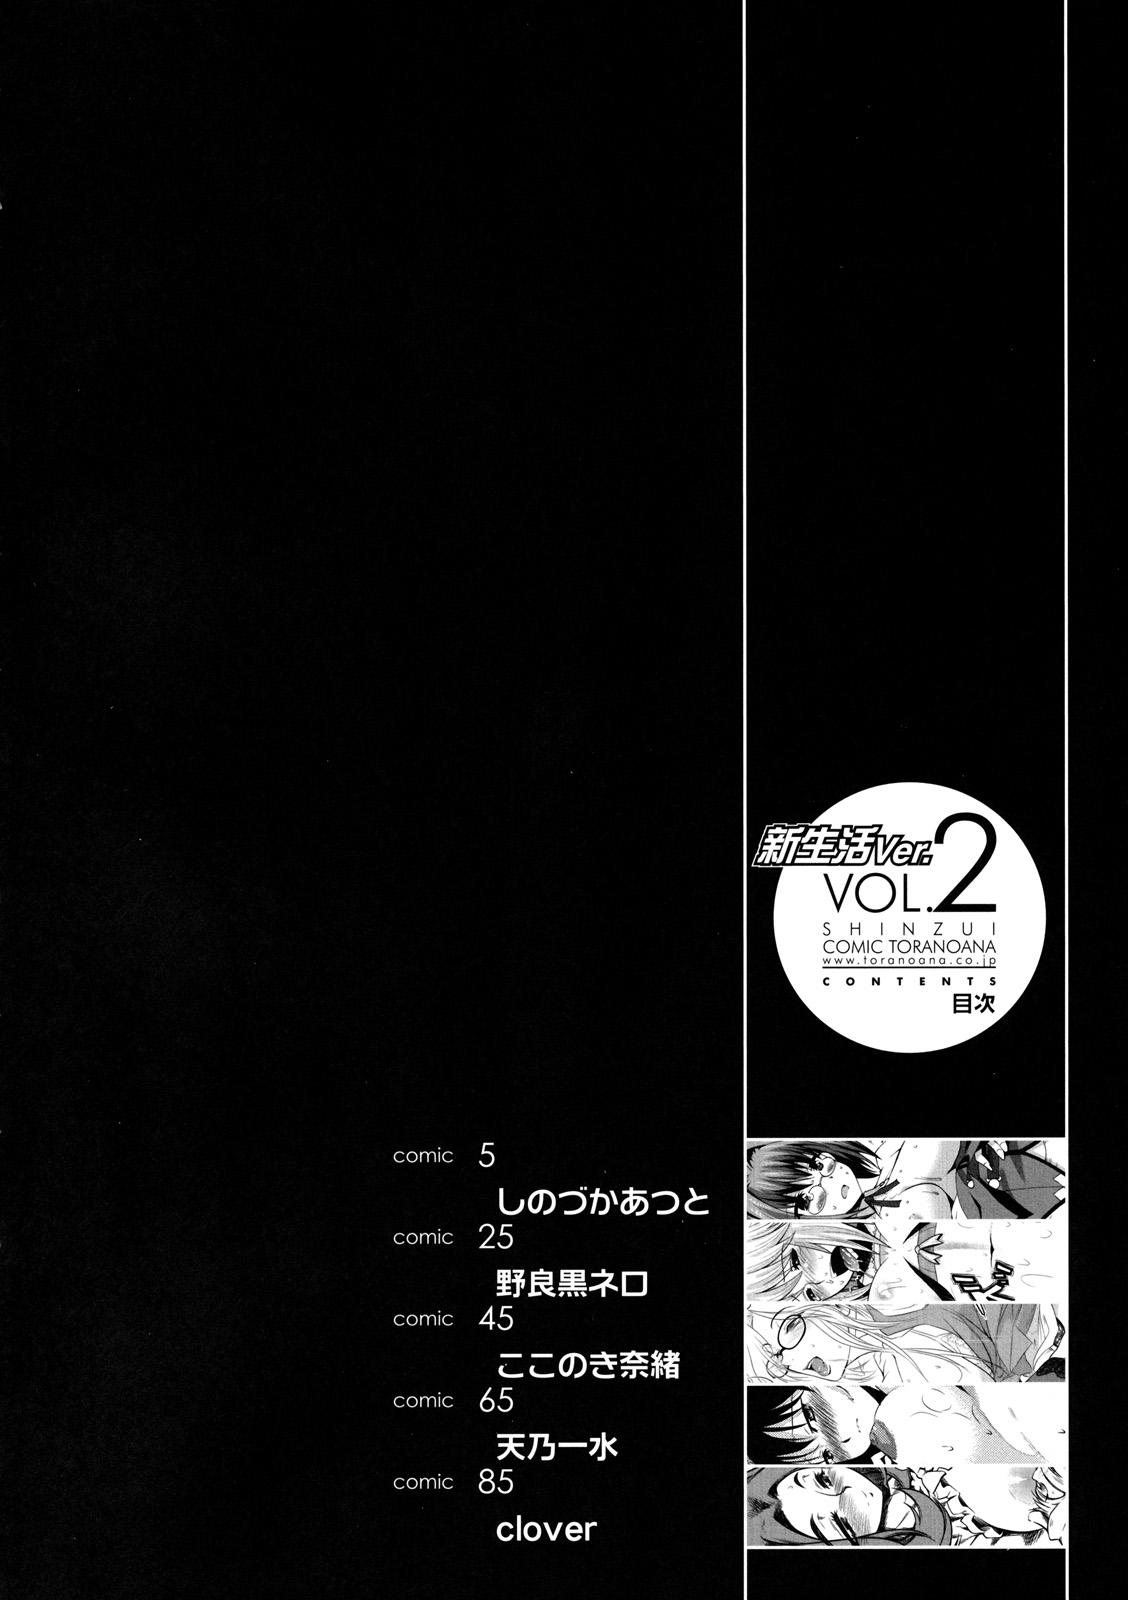 Shinzui Shinseikatsu Ver. Vol. 2 2